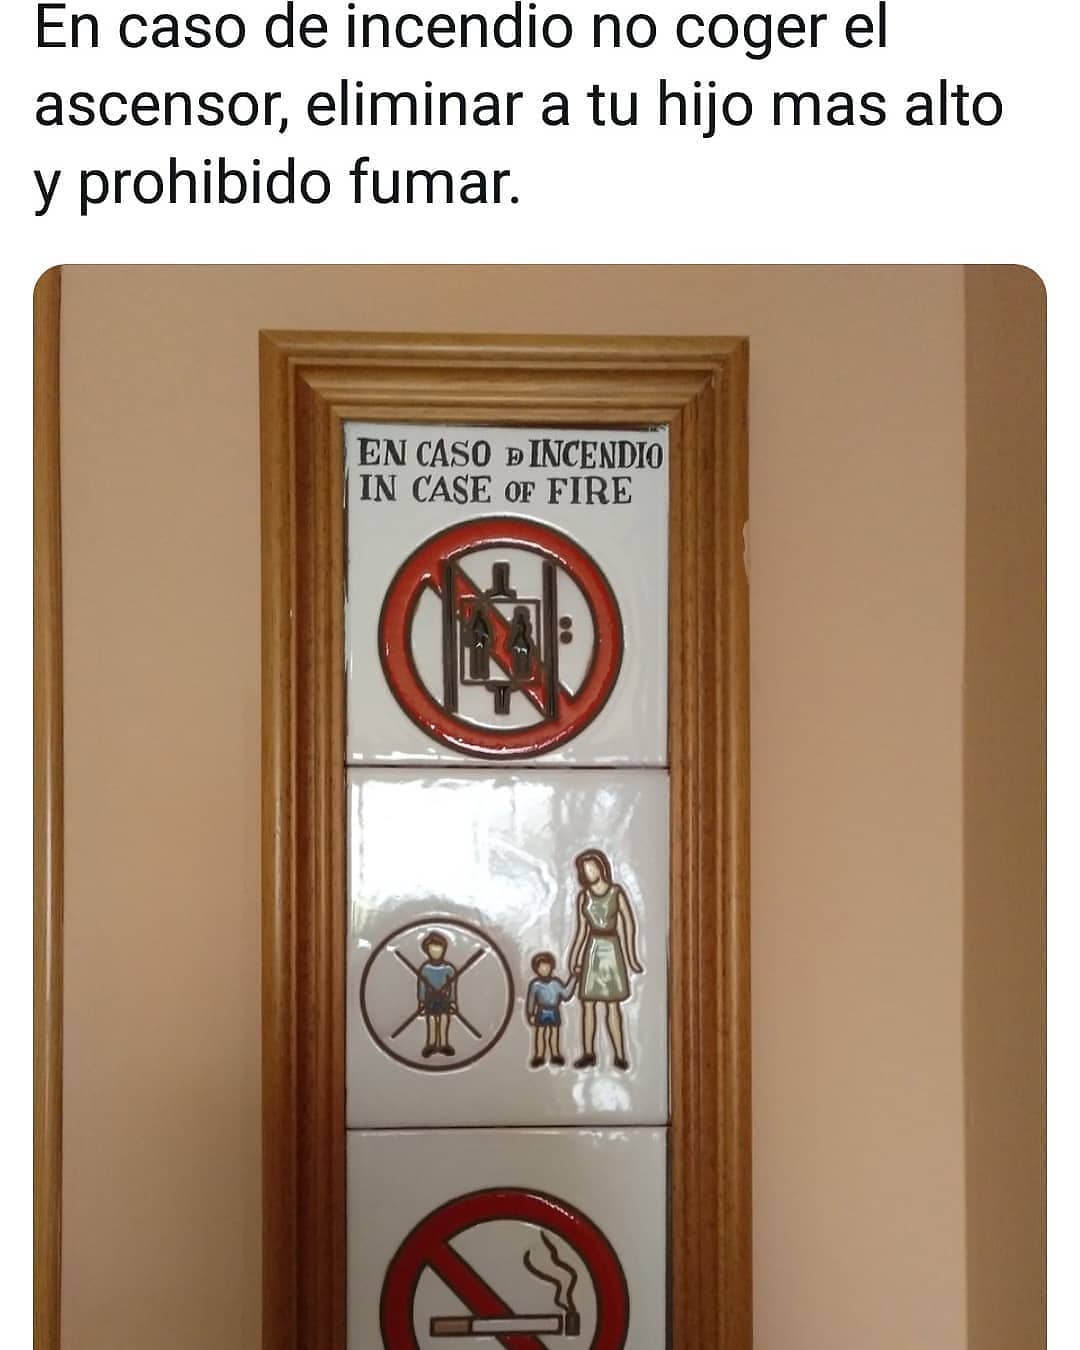 En caso de incendio no coger el ascensor, eliminar a tu hijo mas alto y prohibido fumar.